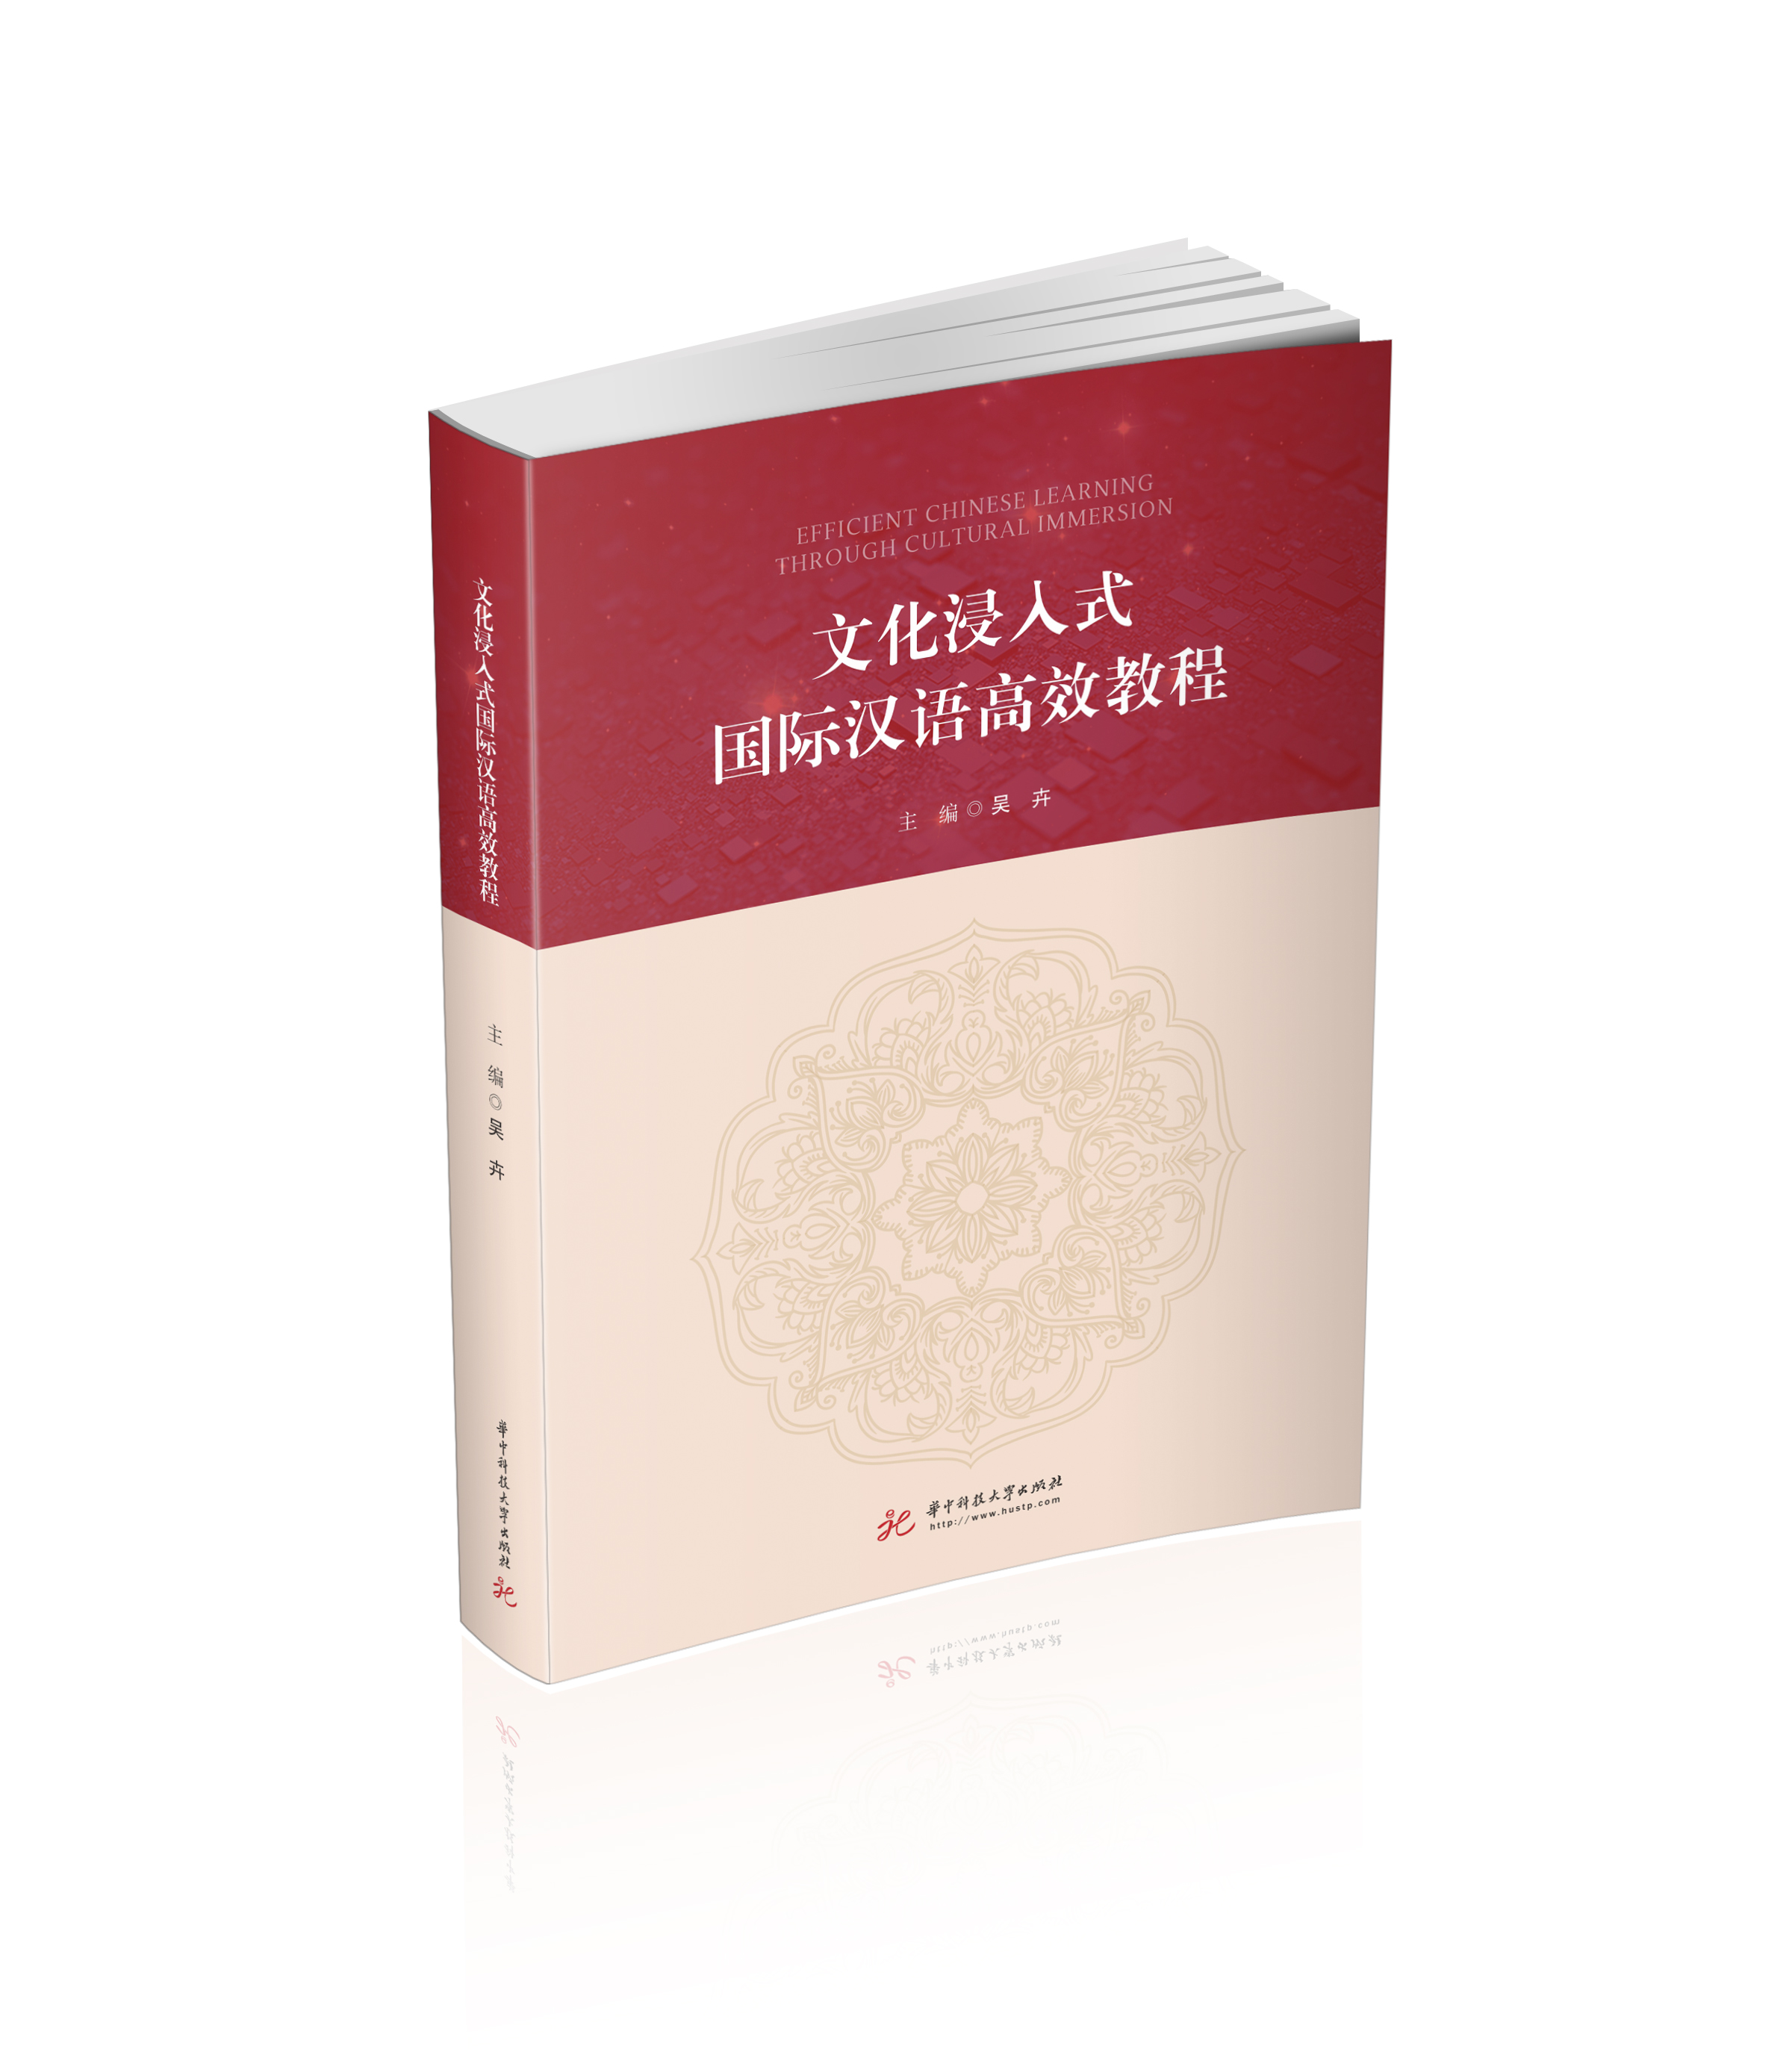 文化浸入式国际汉语高效教程